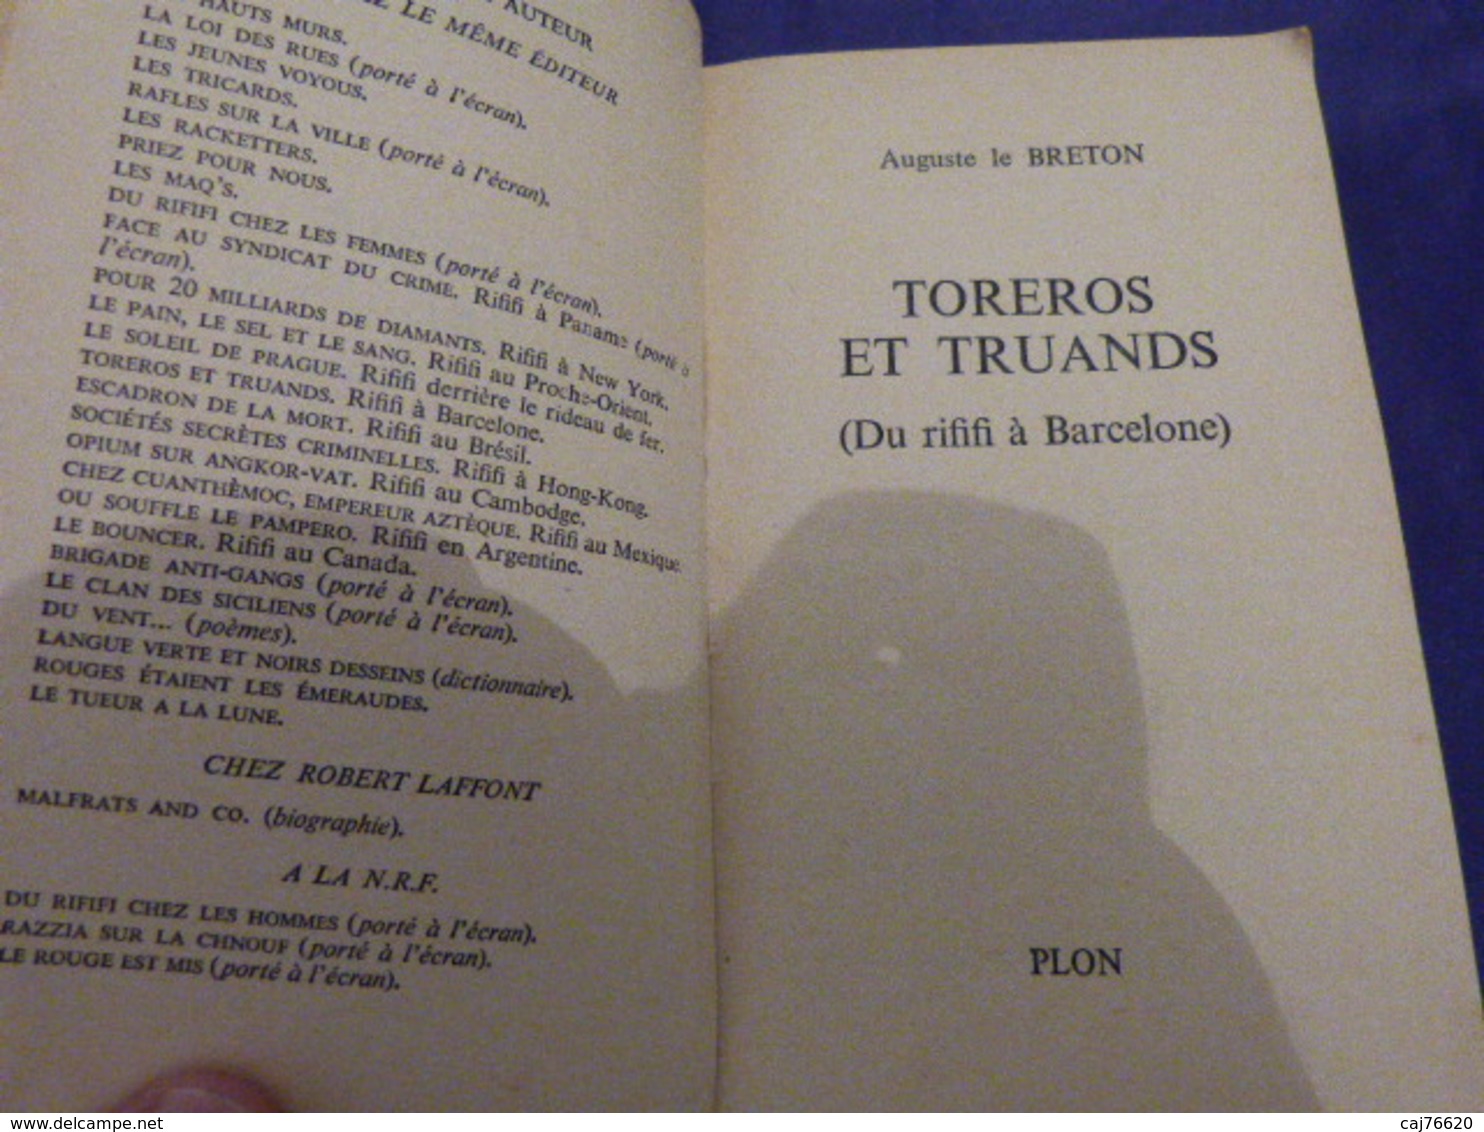 Auguste Le Breton Toreros Et Truands (cai103) - Plon